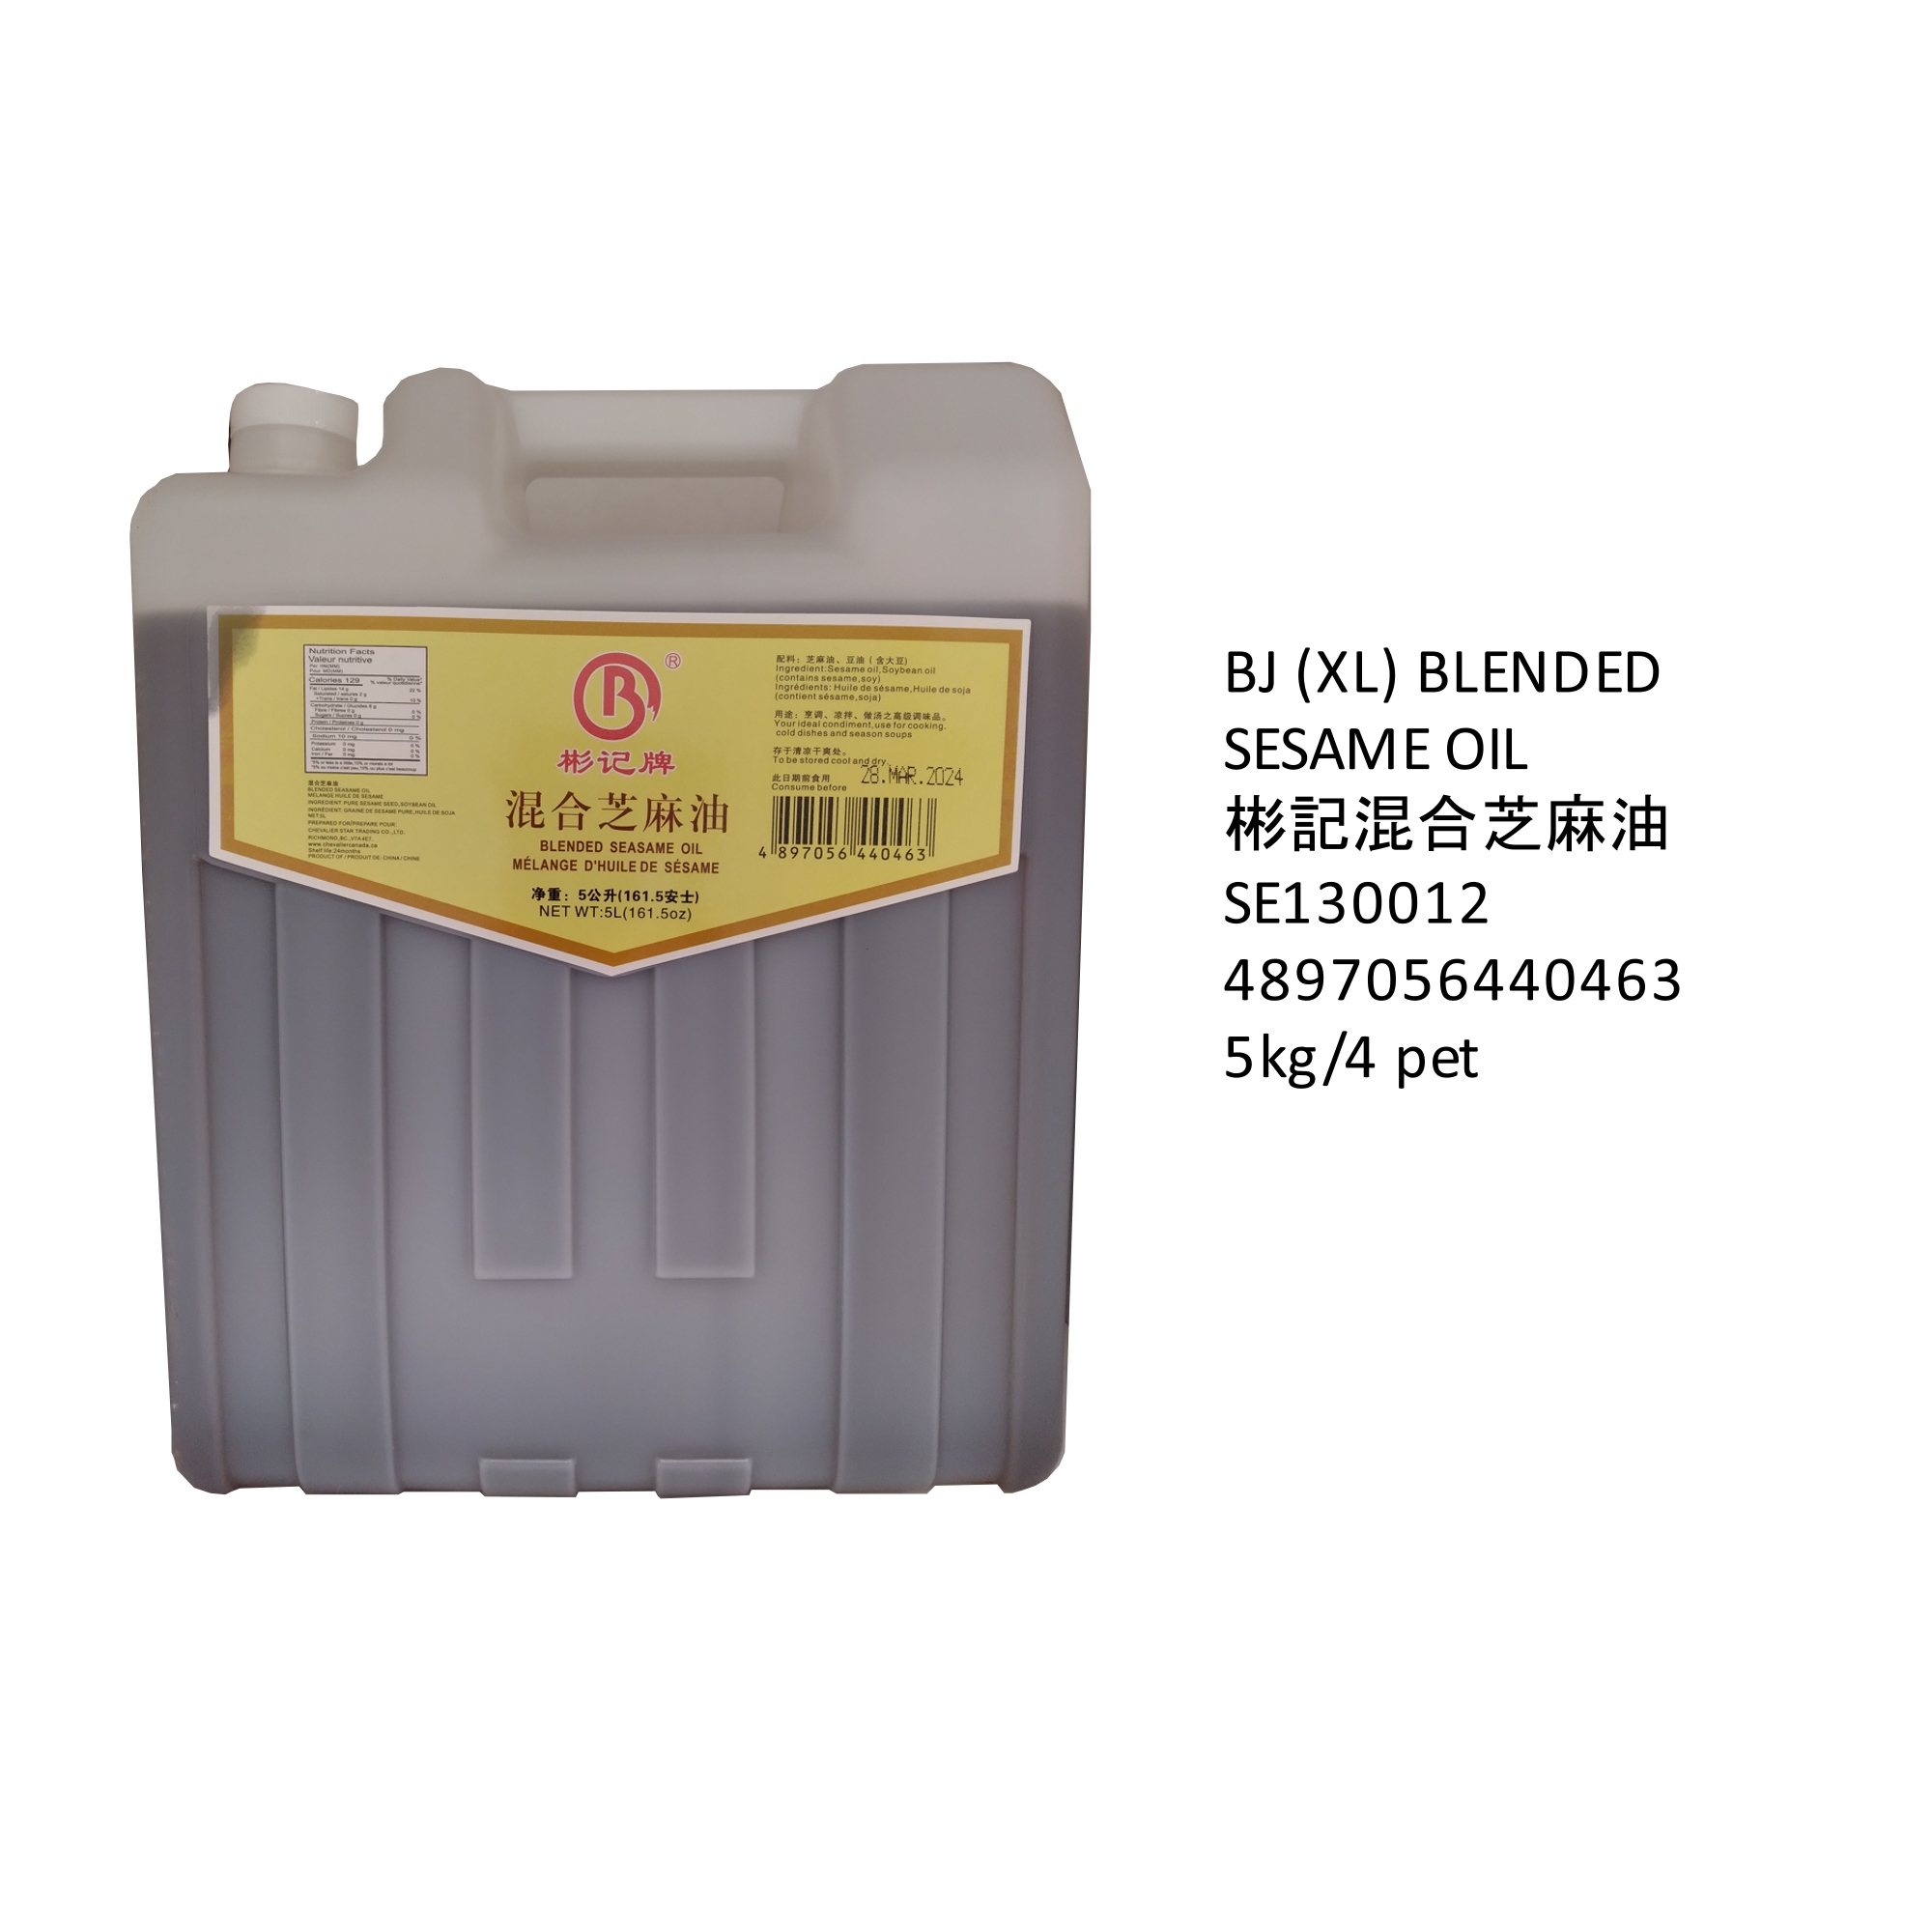 BX (XL) BLENDED SESAME OIL SE130012